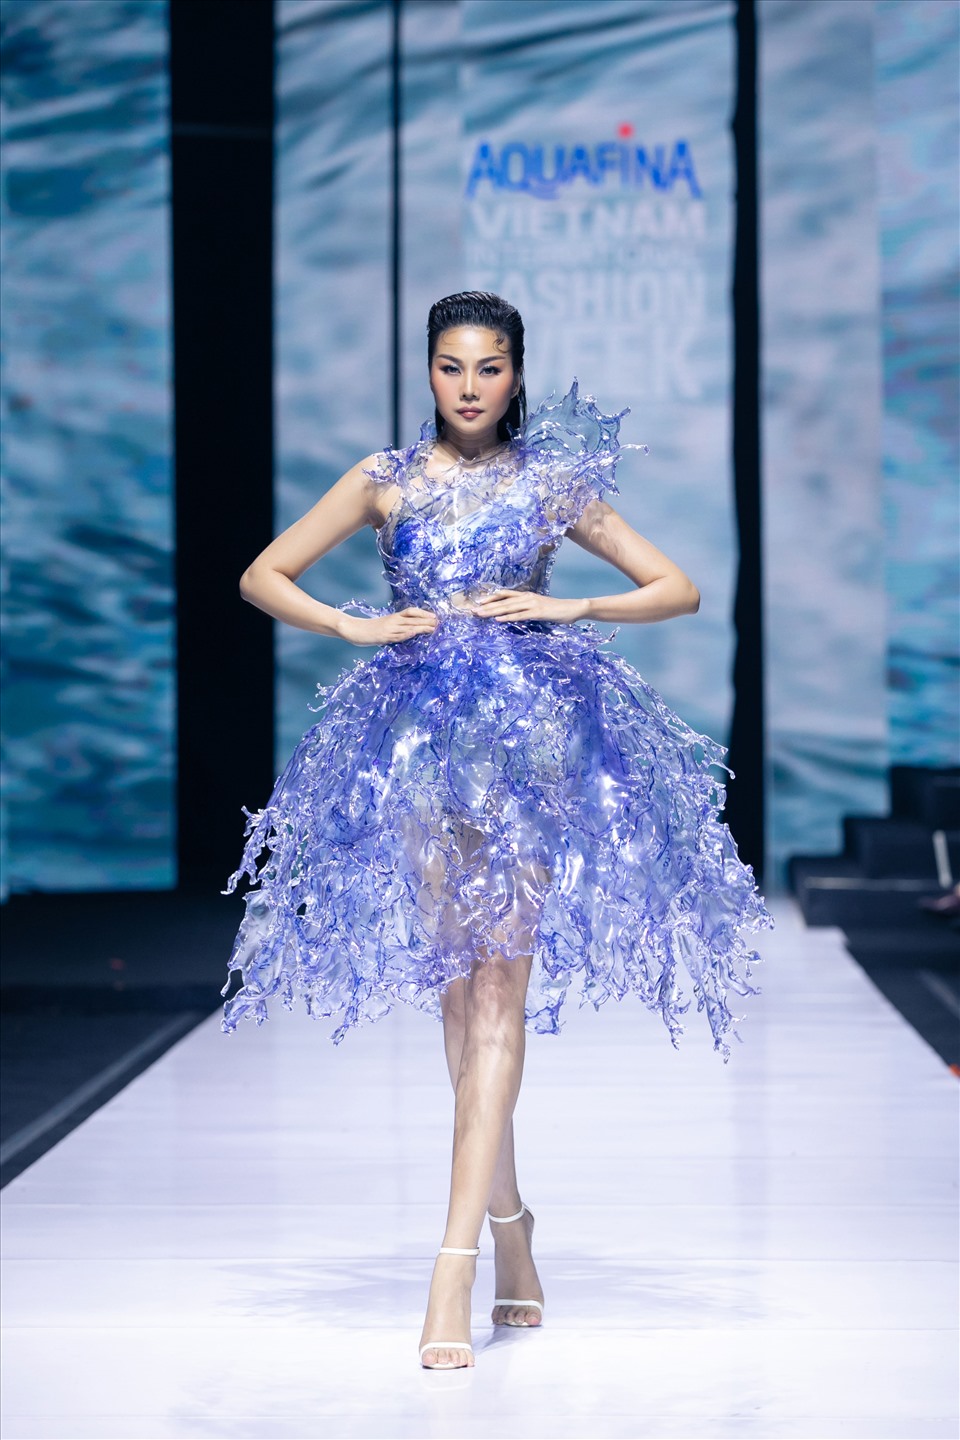 NTK Võ Công Khanh vô cùng tinh tế khi tạo nên chiếc váy được thiết kế kỳ công từ vỏ chai nhựa, khắc họa phong cách thời trang khác biệt của NTK với chất liệu tái chế, thân thiện với môi trường.